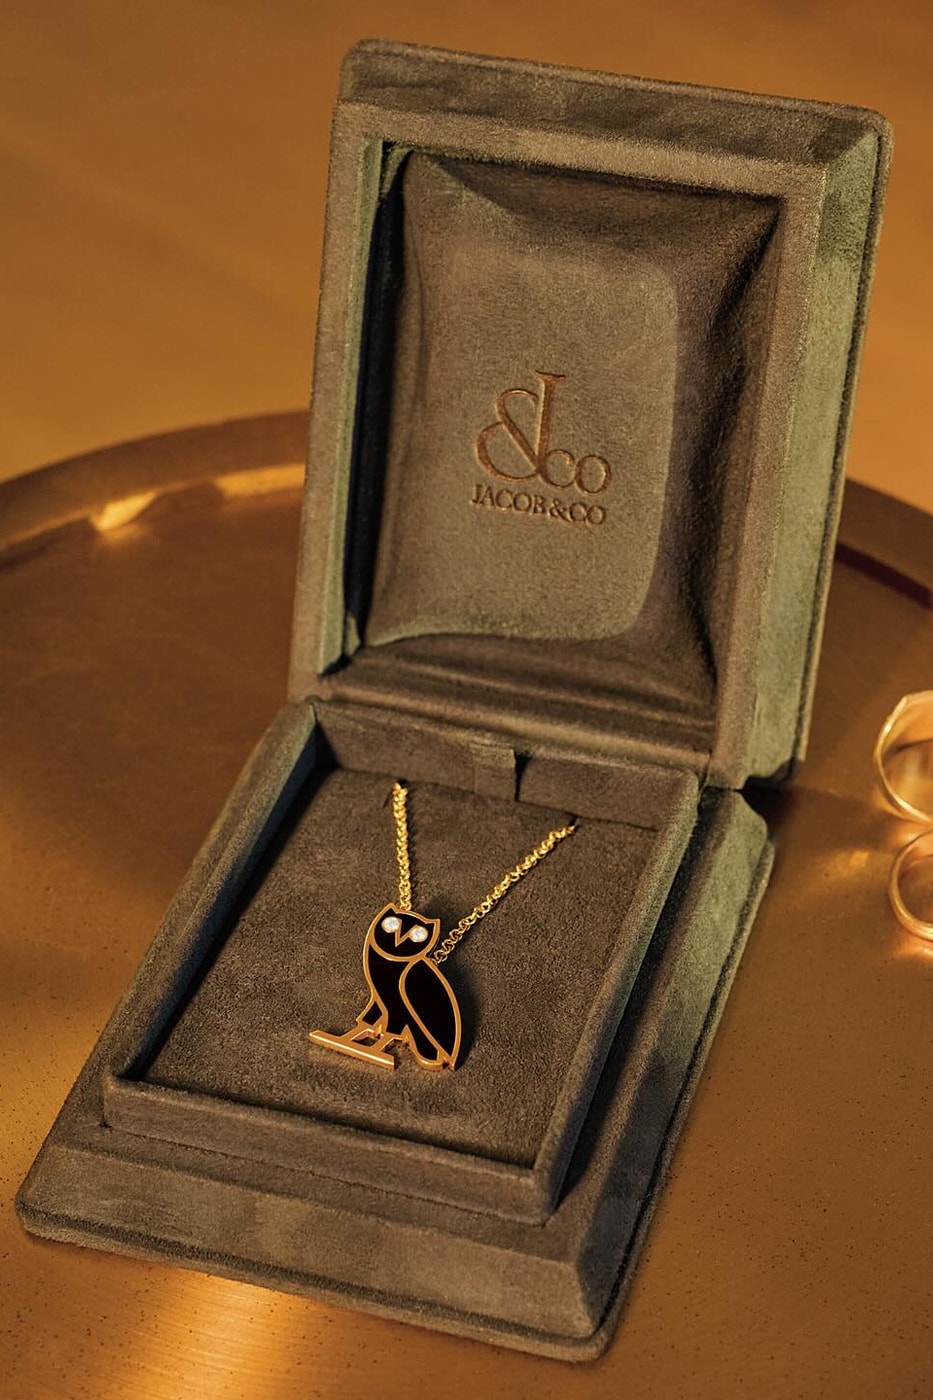 ドレイク手掛けるOVOとジェイコブアンドカンパニーがコラボネックレスを発売 Drake's OVO Teams up With Jacob & Co. for Owl Pendant Necklace 14k gold sterling silver diamonds